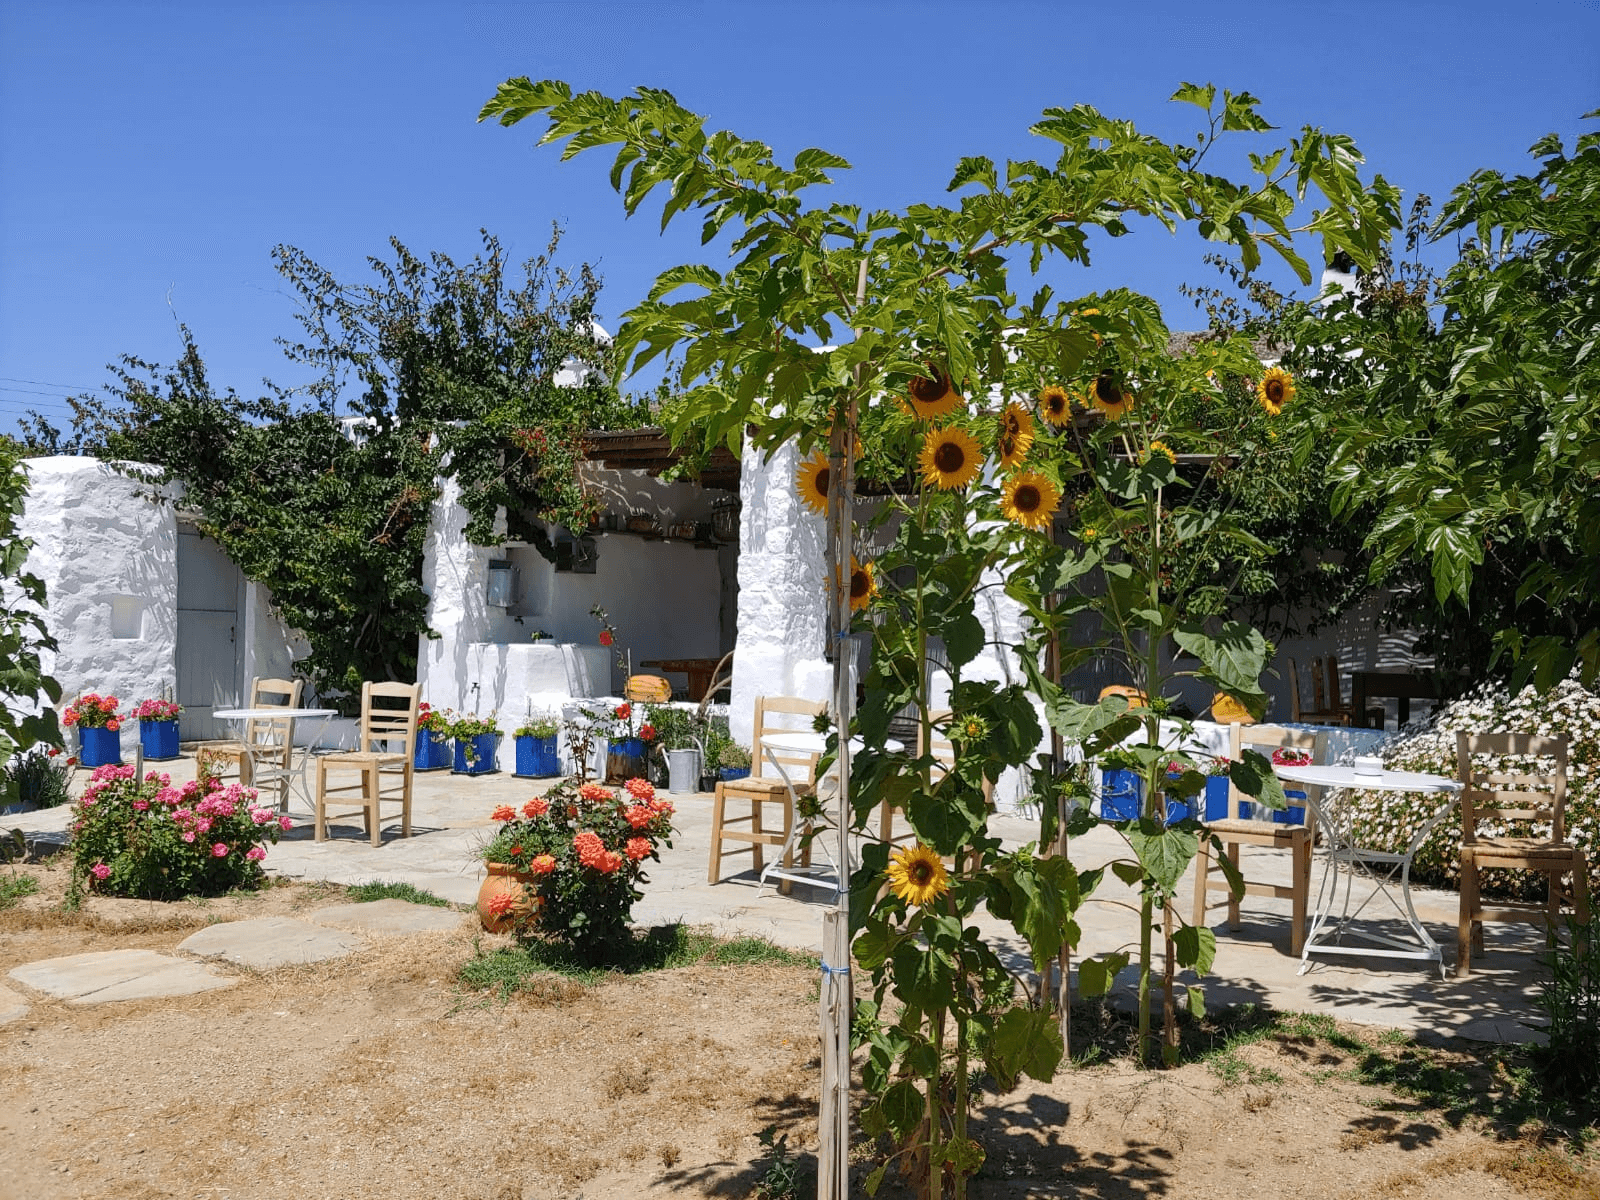 Garten mit vielen Blumen und einer Terrasse vor einem weißen Haus, welches von grünen Sträuchern überwachsen wird